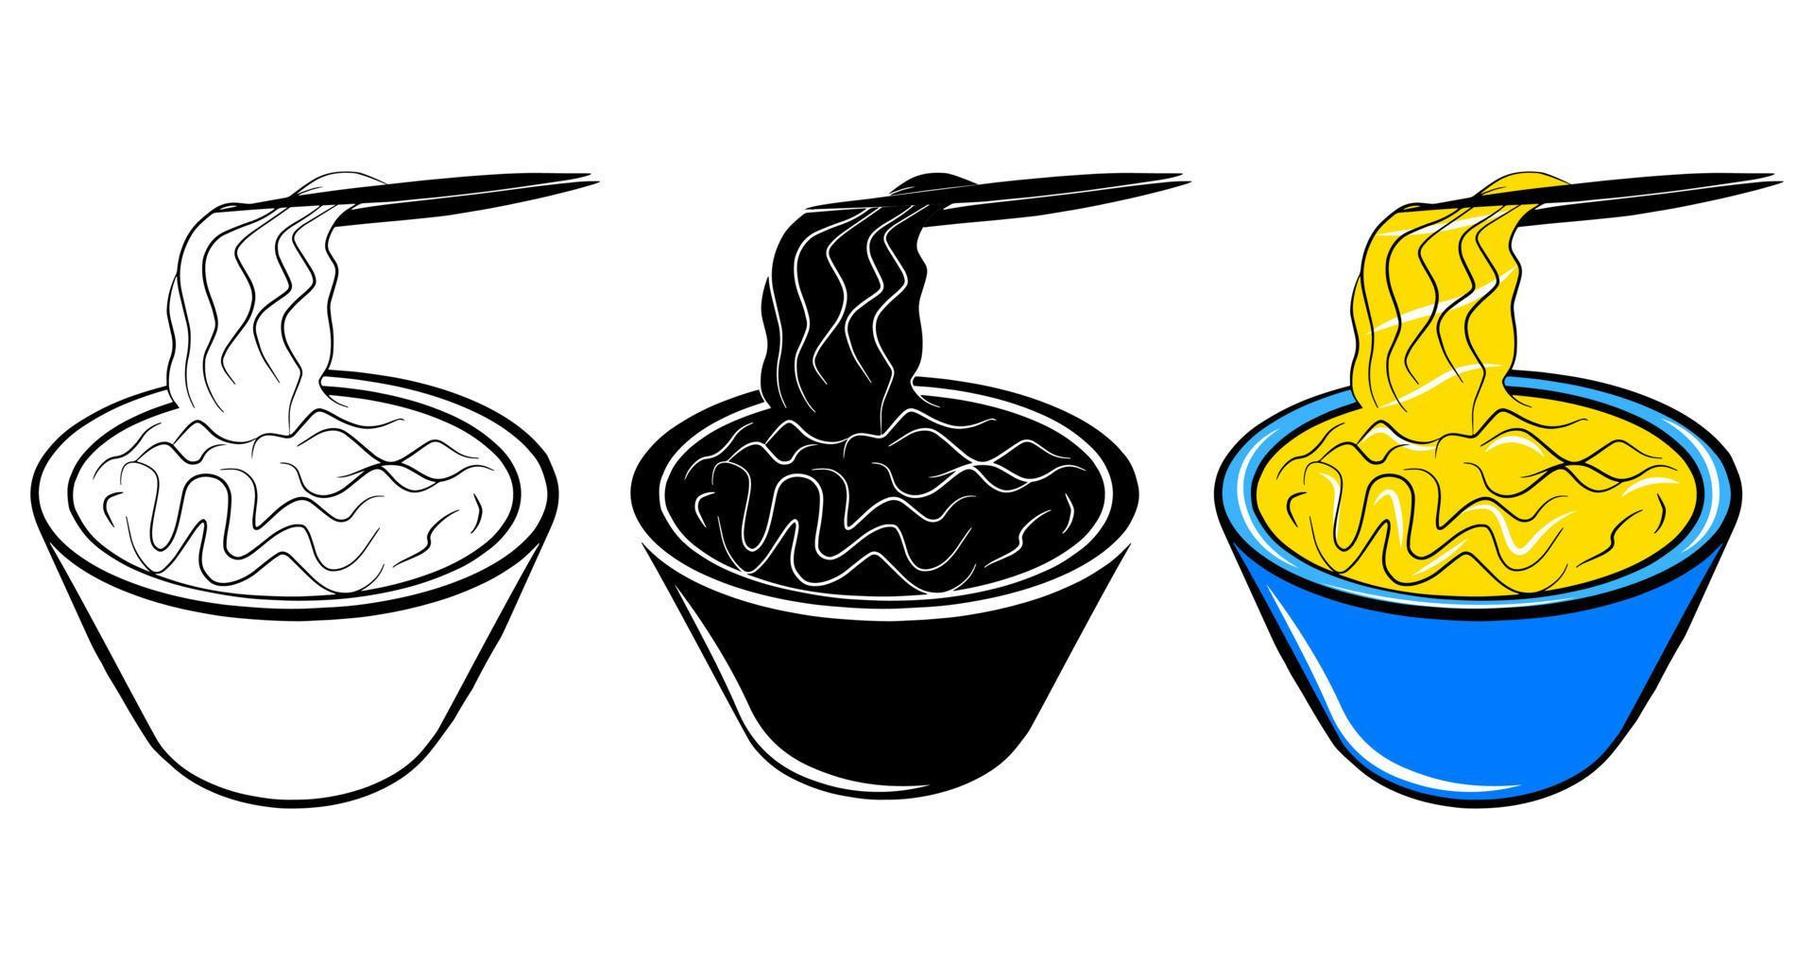 Noodles soup icon set. Vector flat illustration. Logo or package design element. Outline sketch doodle style drawing.